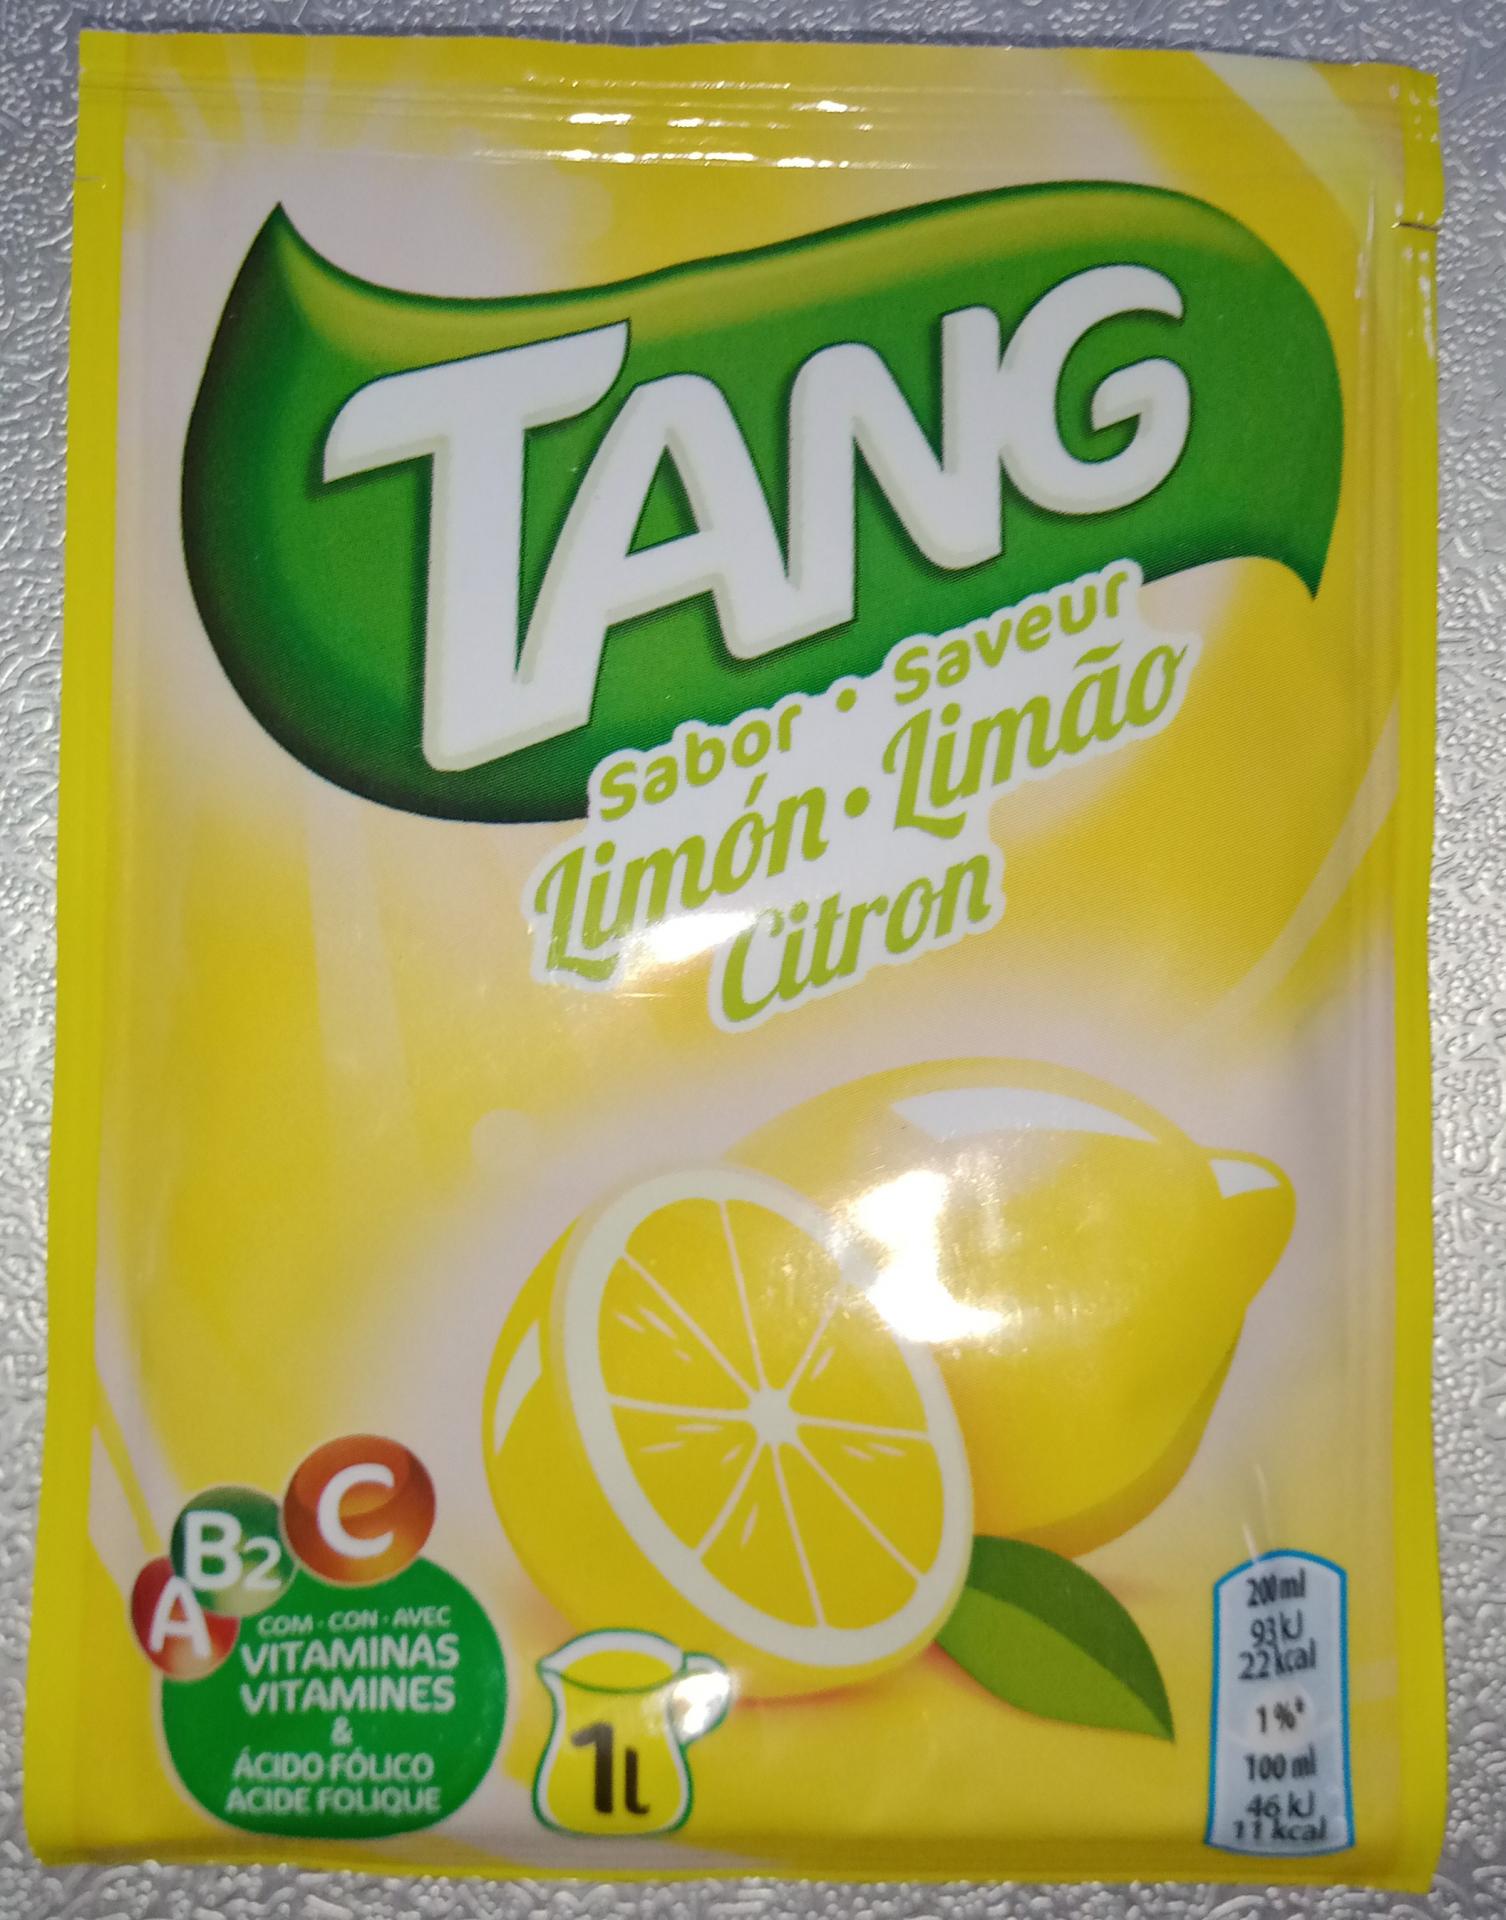 Tang citron